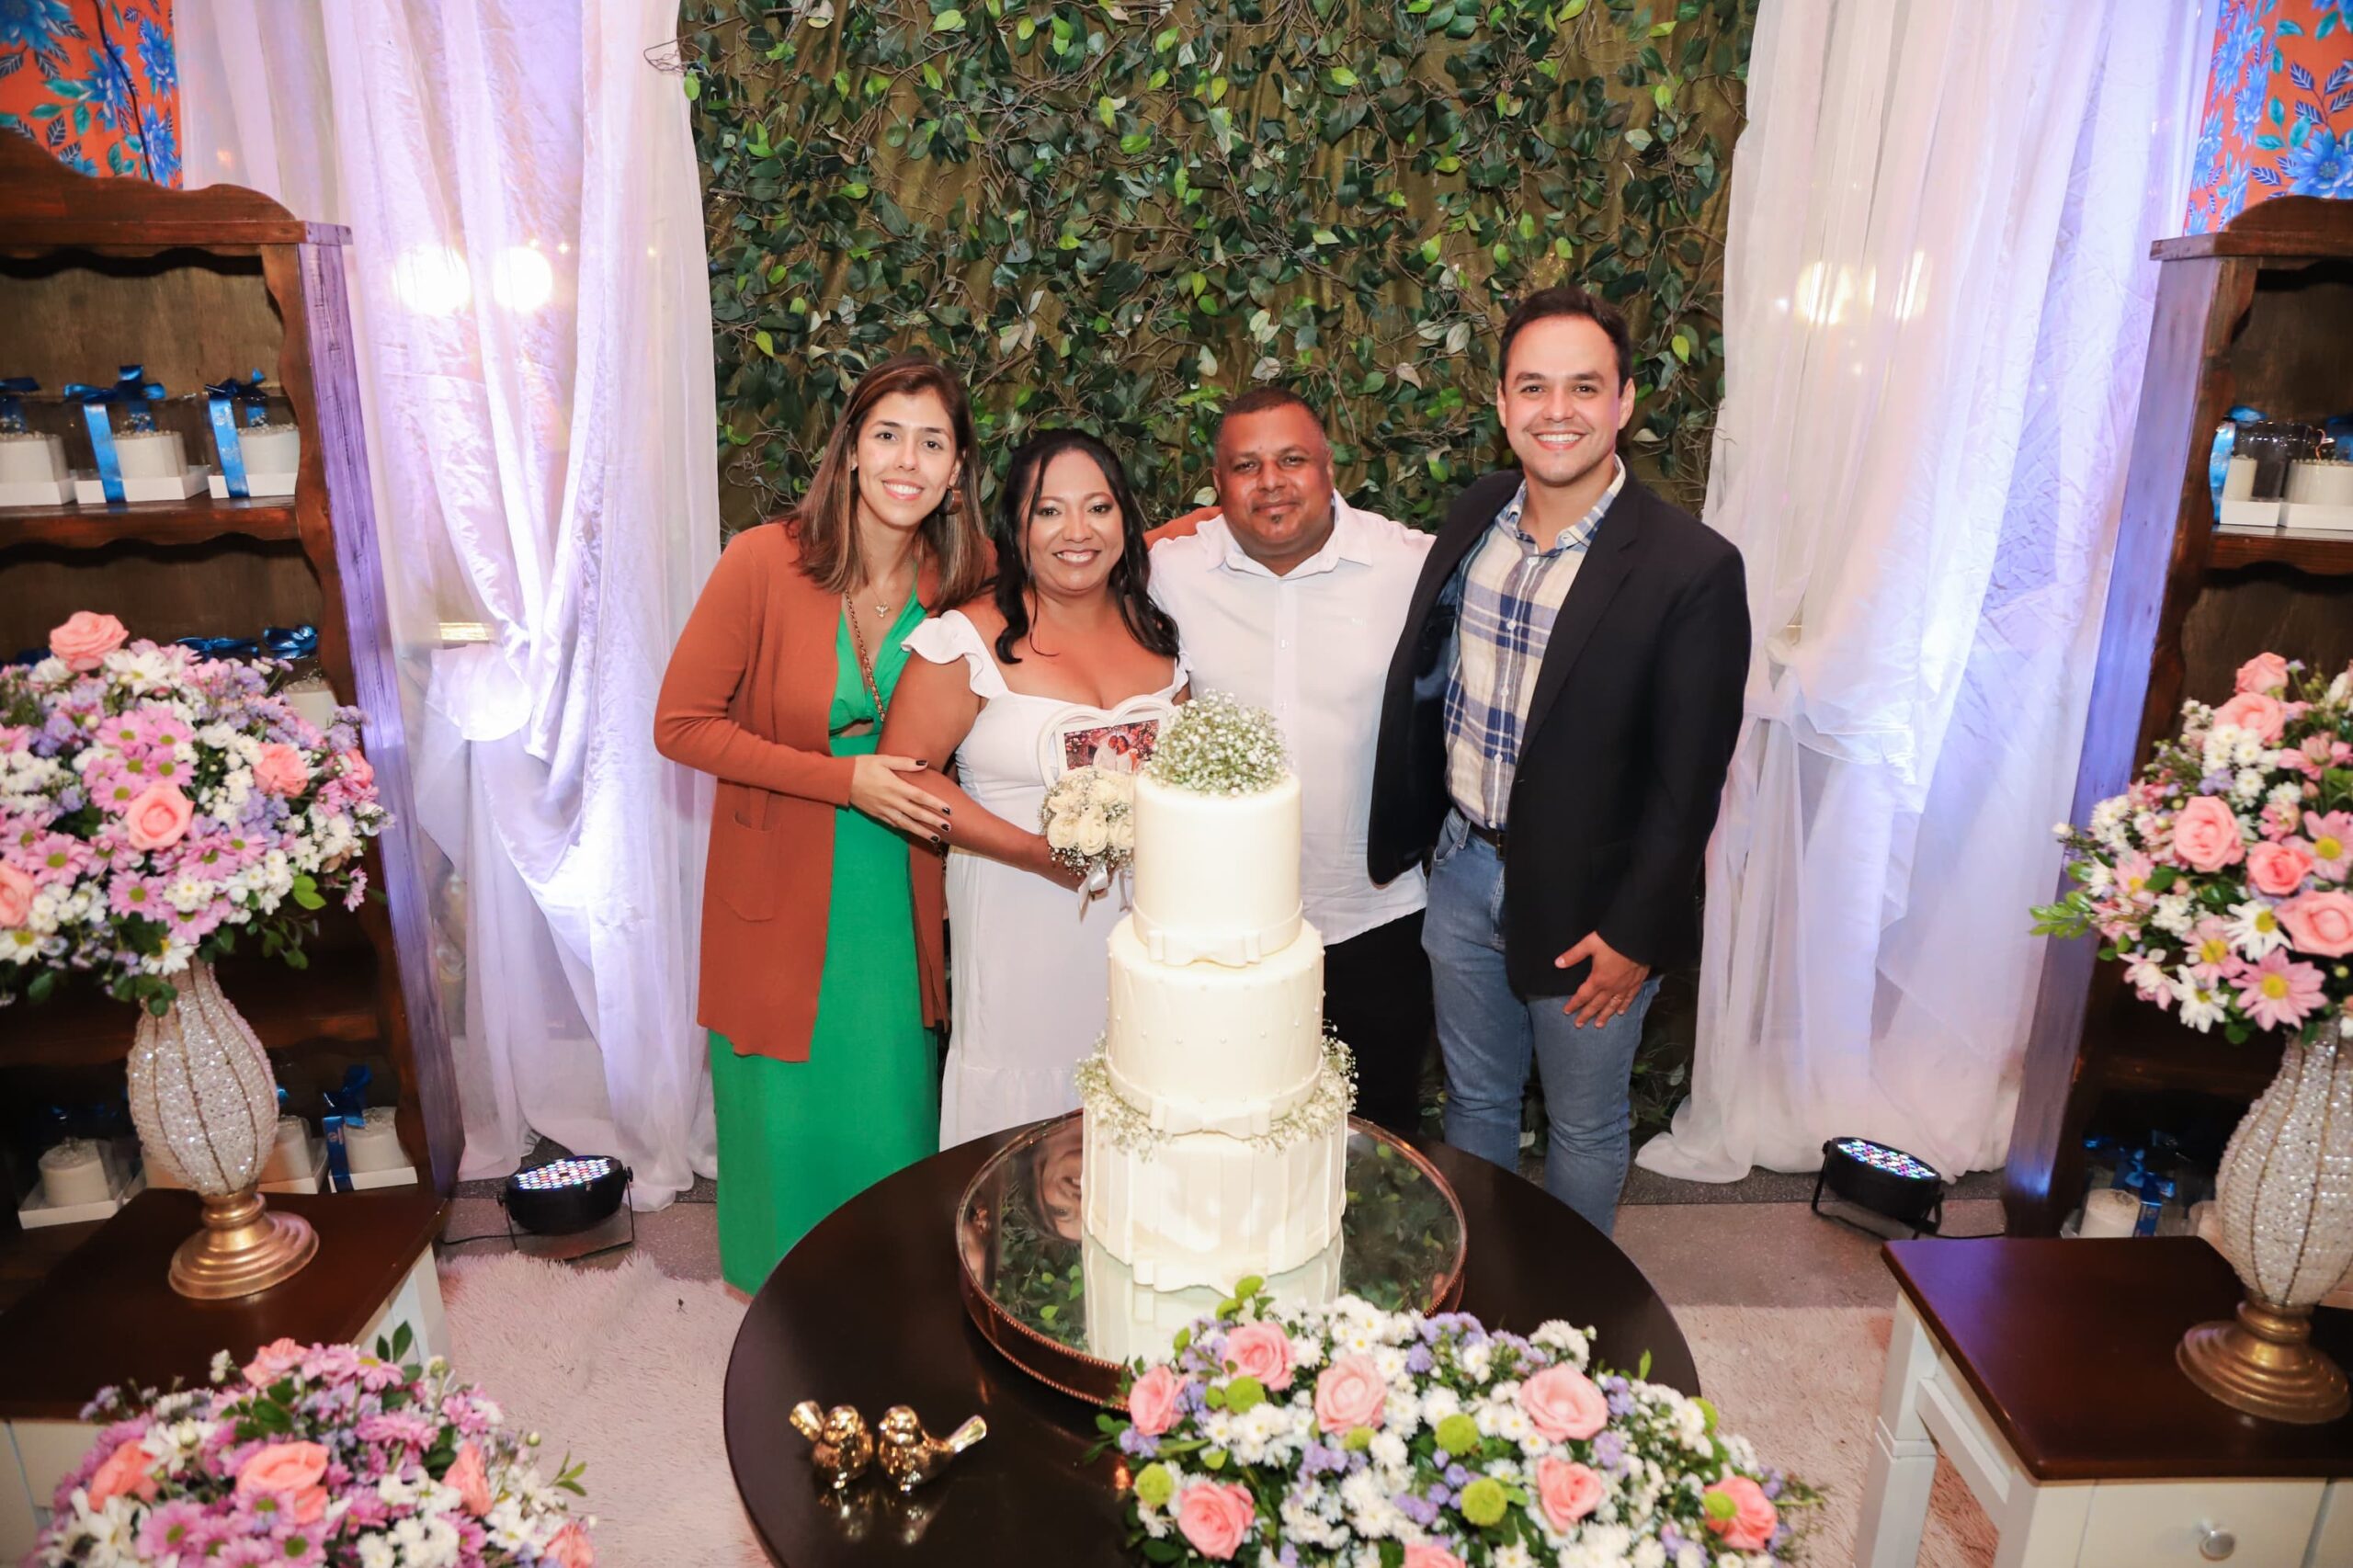 Prefeitura realiza 3ª Edição do Casamento Comunitário no Melhor São João das Nossas vidas